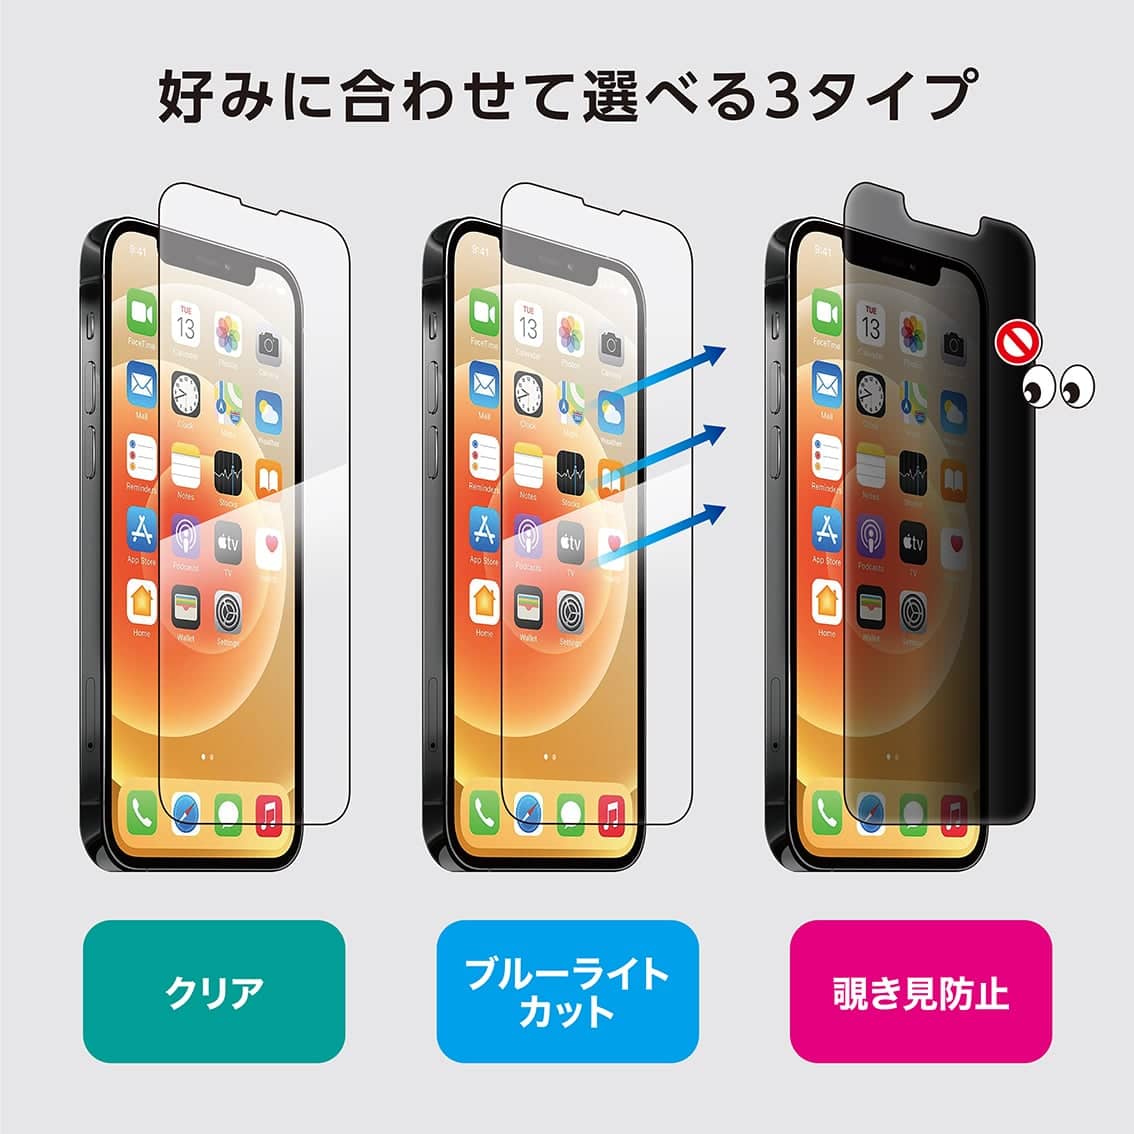 新型  iPhone13 / 13Pro 対応 超薄 0.15mm ガラスフィルム クリア ブルーライトカット 覗き見防止 iPhone 2021年モデル 6.1インチ